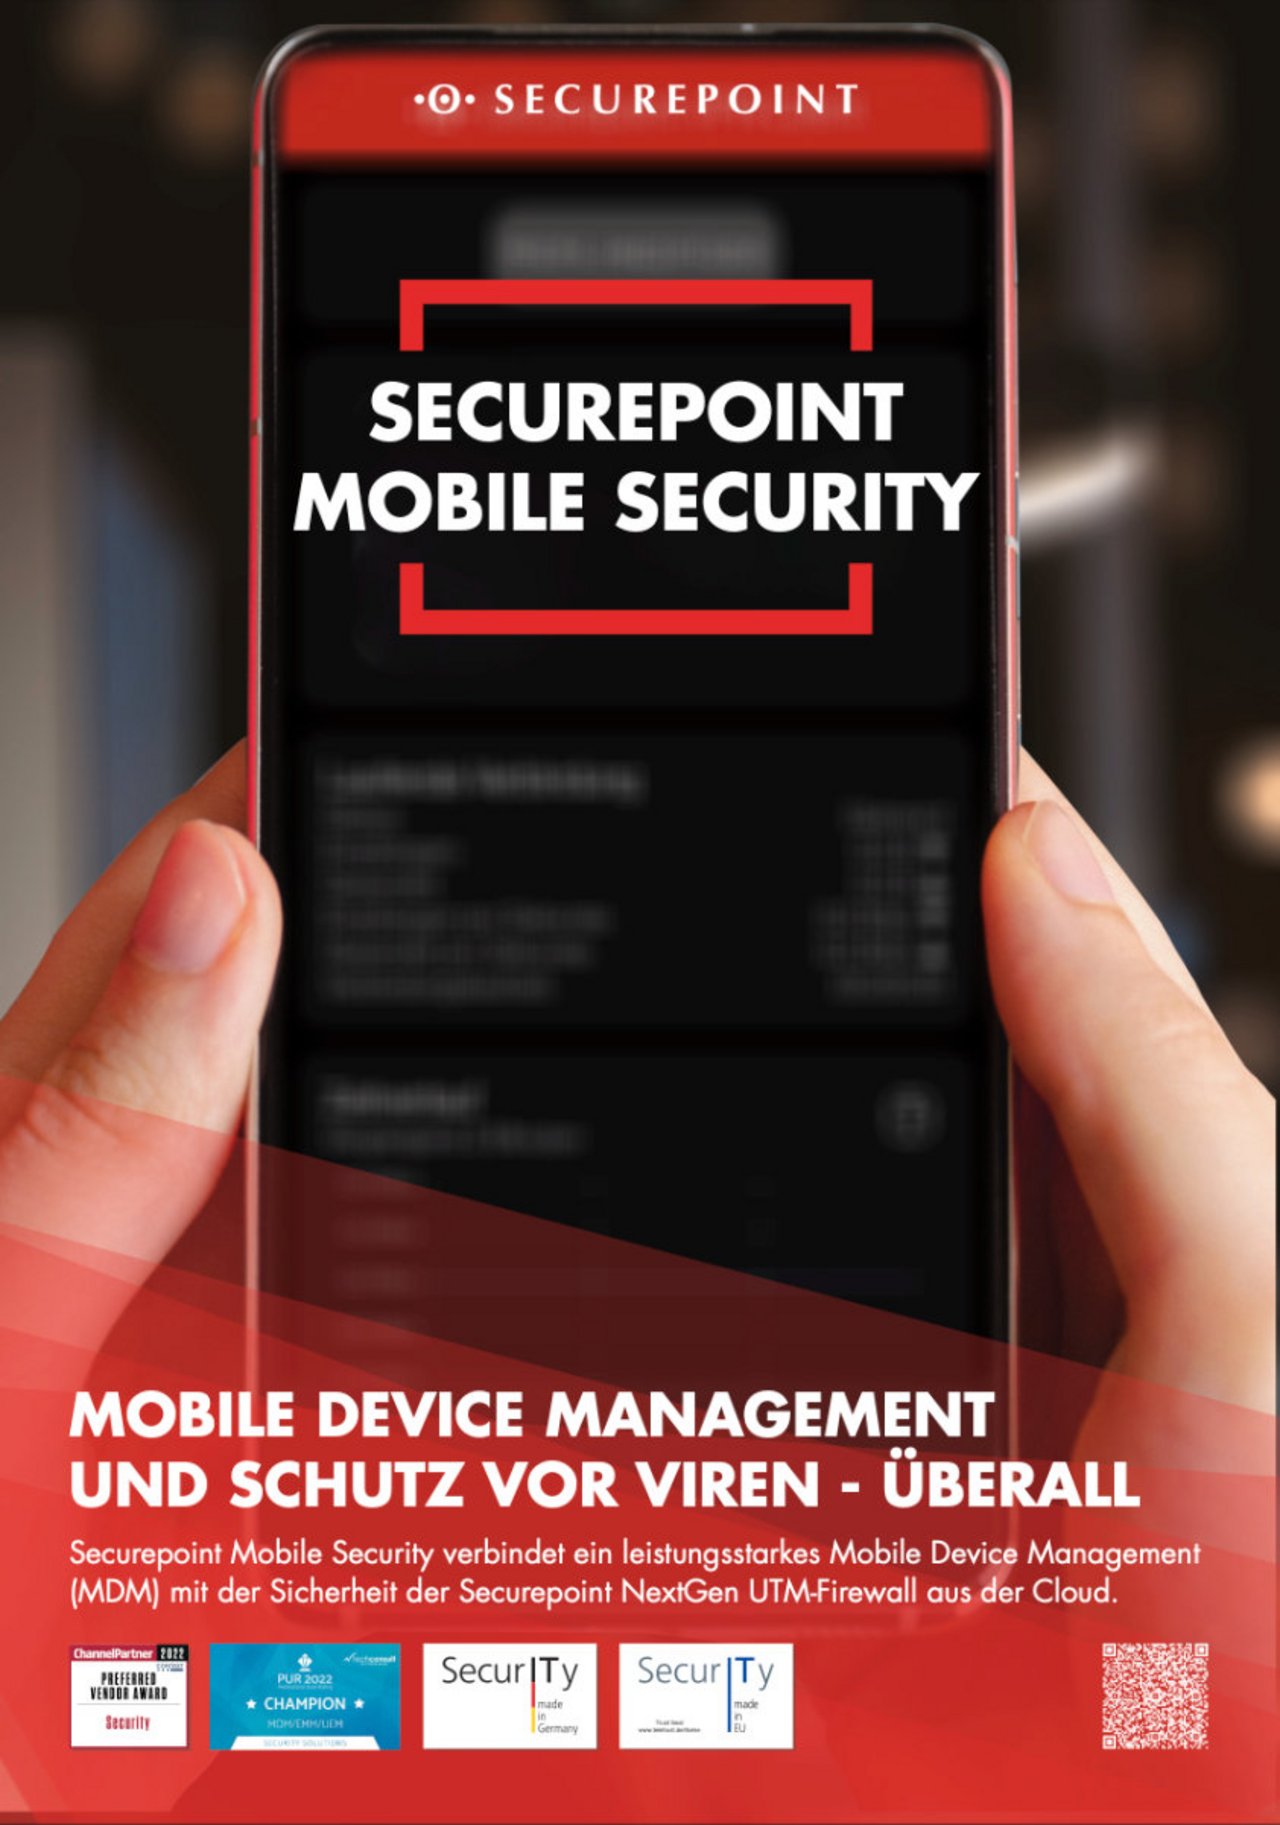 Titel des Prospekts für Securepoint Mobile Security.